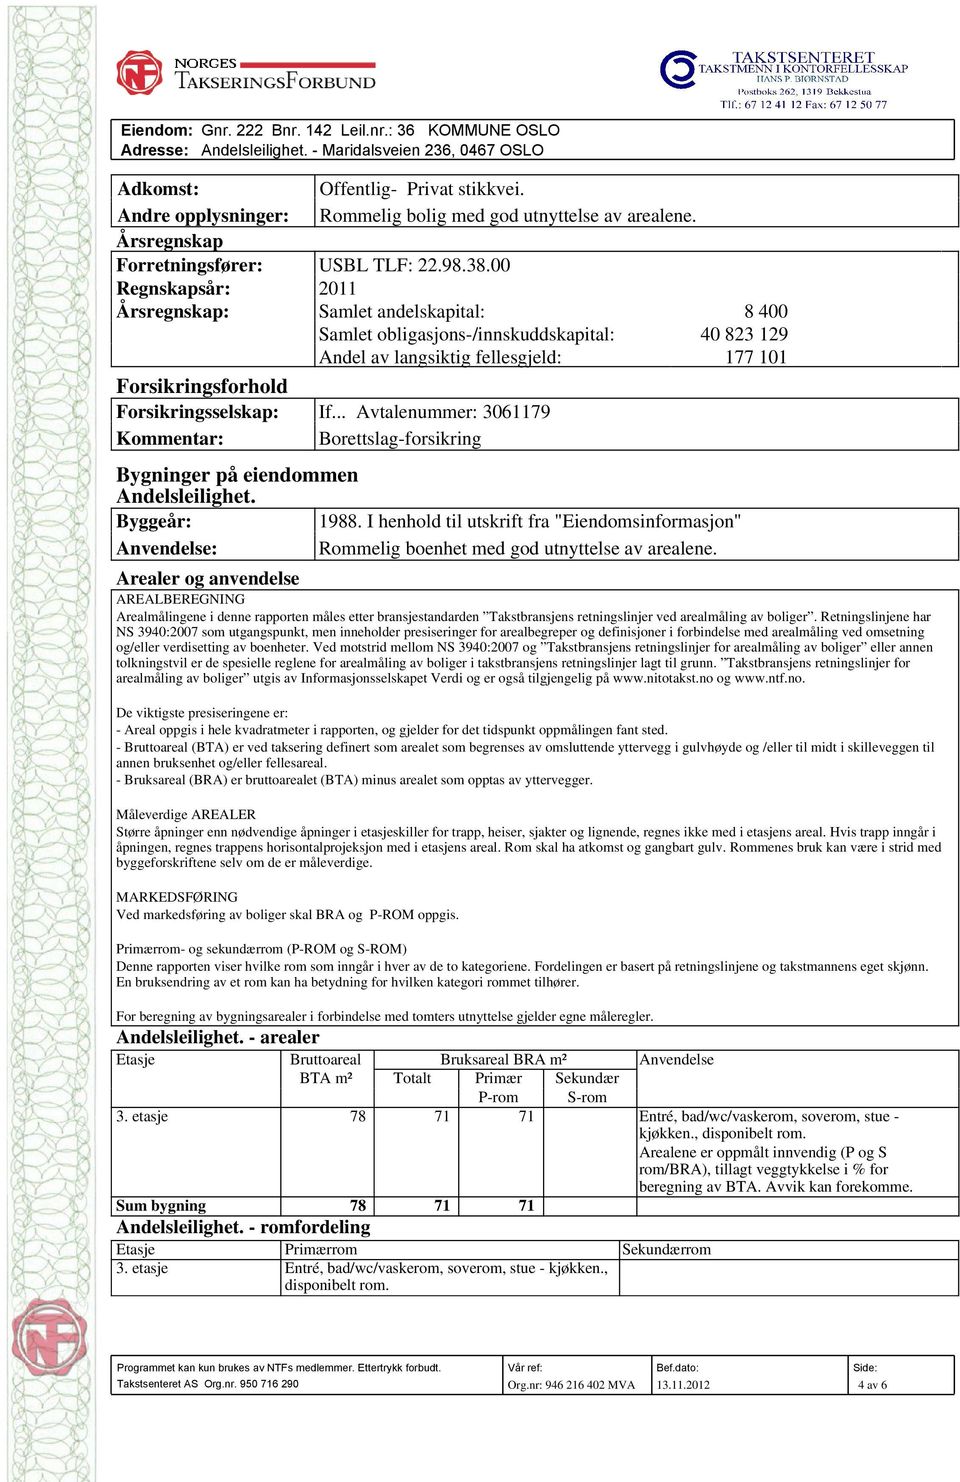 .. Avtalenummer: 3061179 Kommentar: Borettslag-forsikring Bygninger på eiendommen Byggeår: 1988.